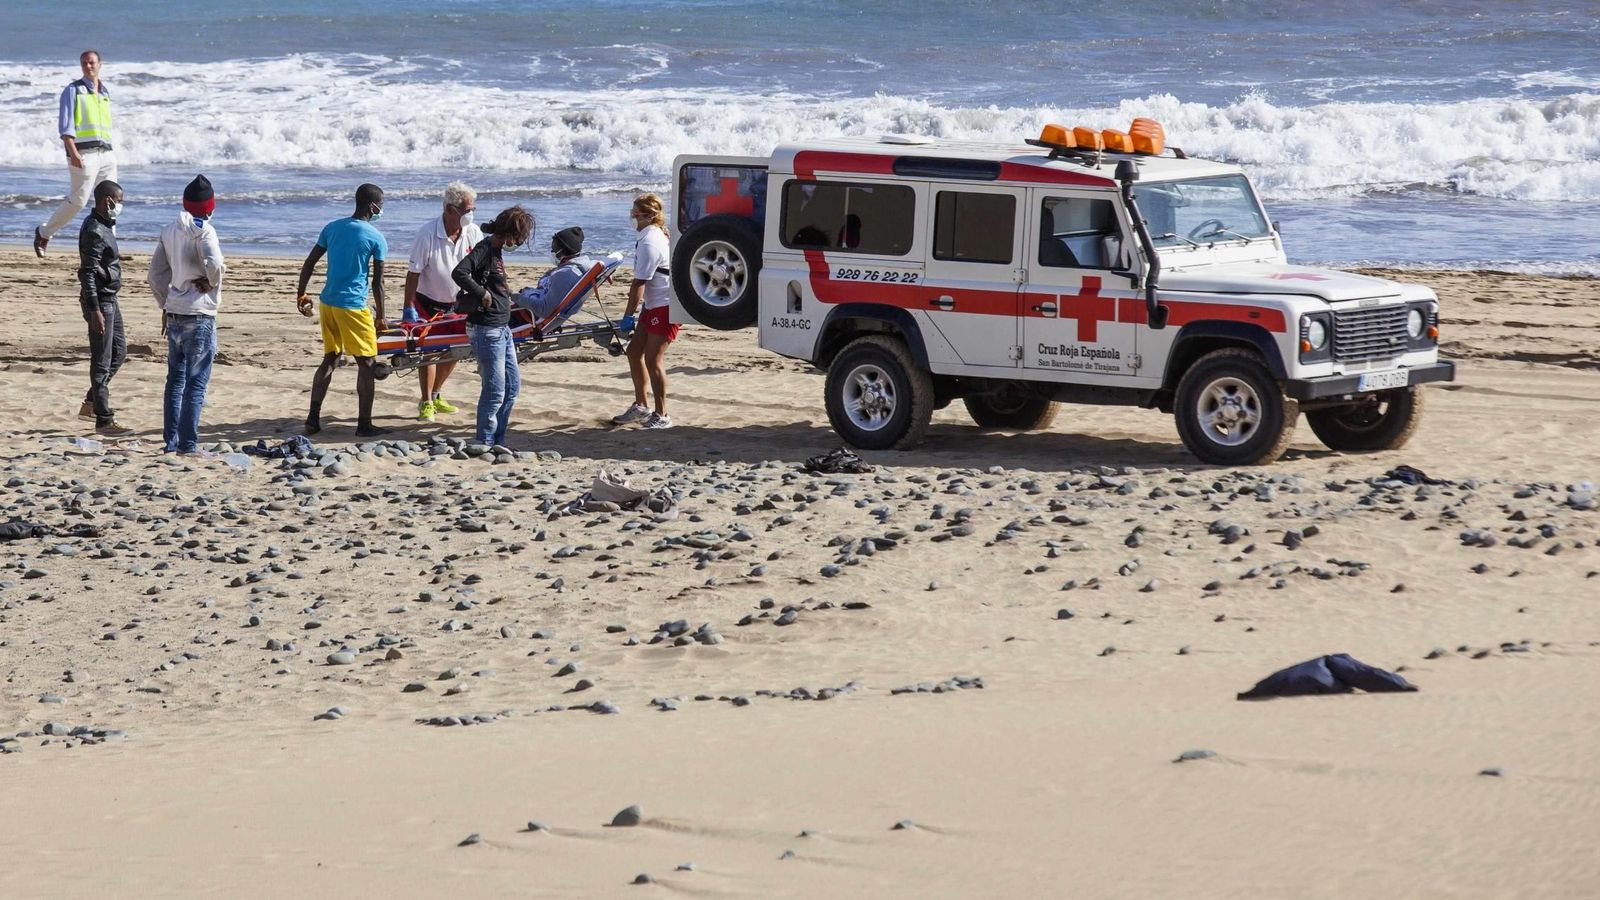 Foto: Miembros de la Cruz Roja llevan a un inmigrante a un vehículo en la playa de Maspalomas, en Gran Canaria. (Reuters)